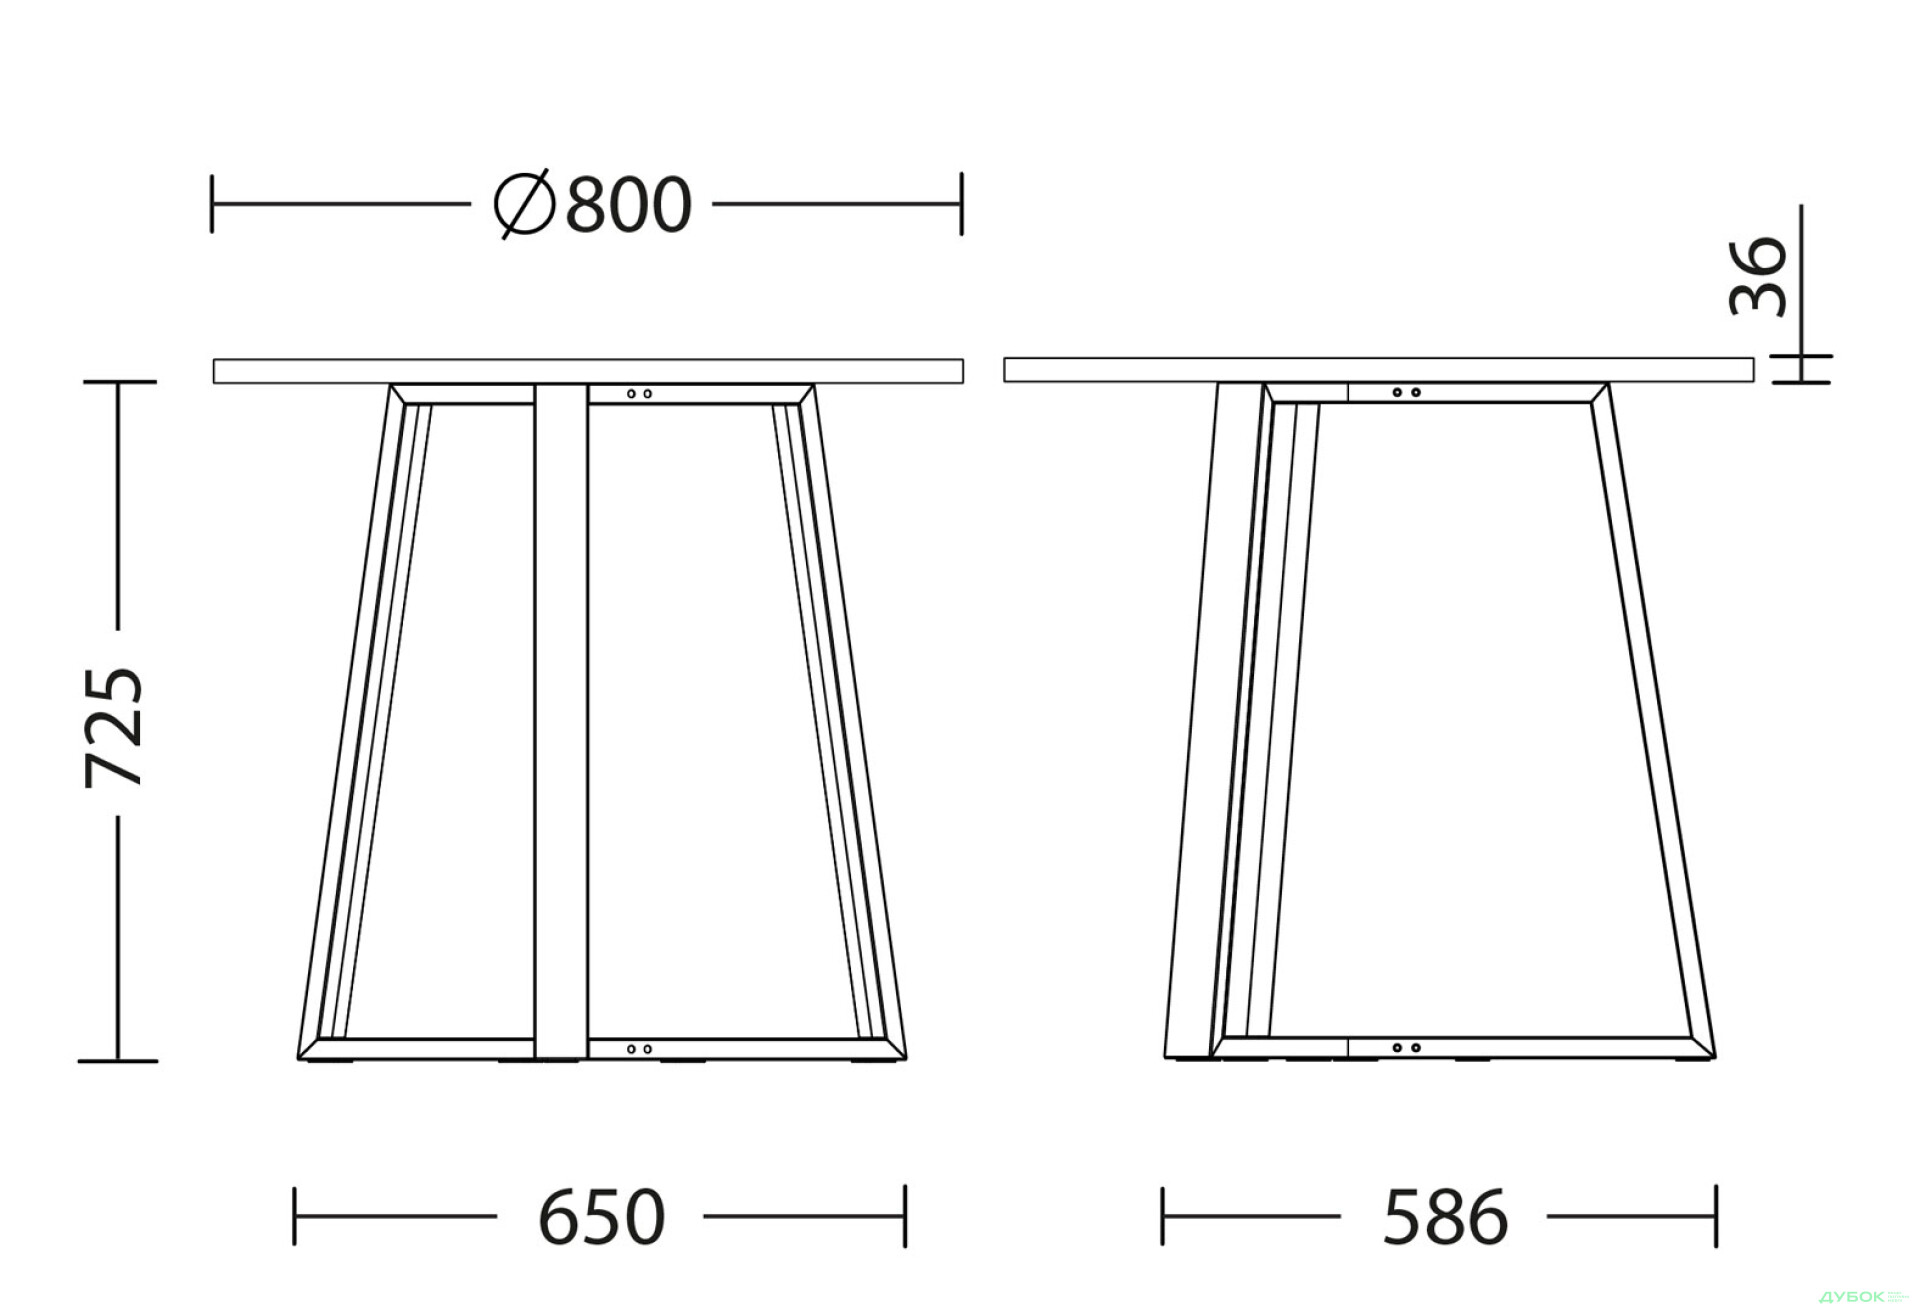 Фото 3 - Стол обеденный Новый Стиль Calipso white (36) D800 80x80 см, серый шифер